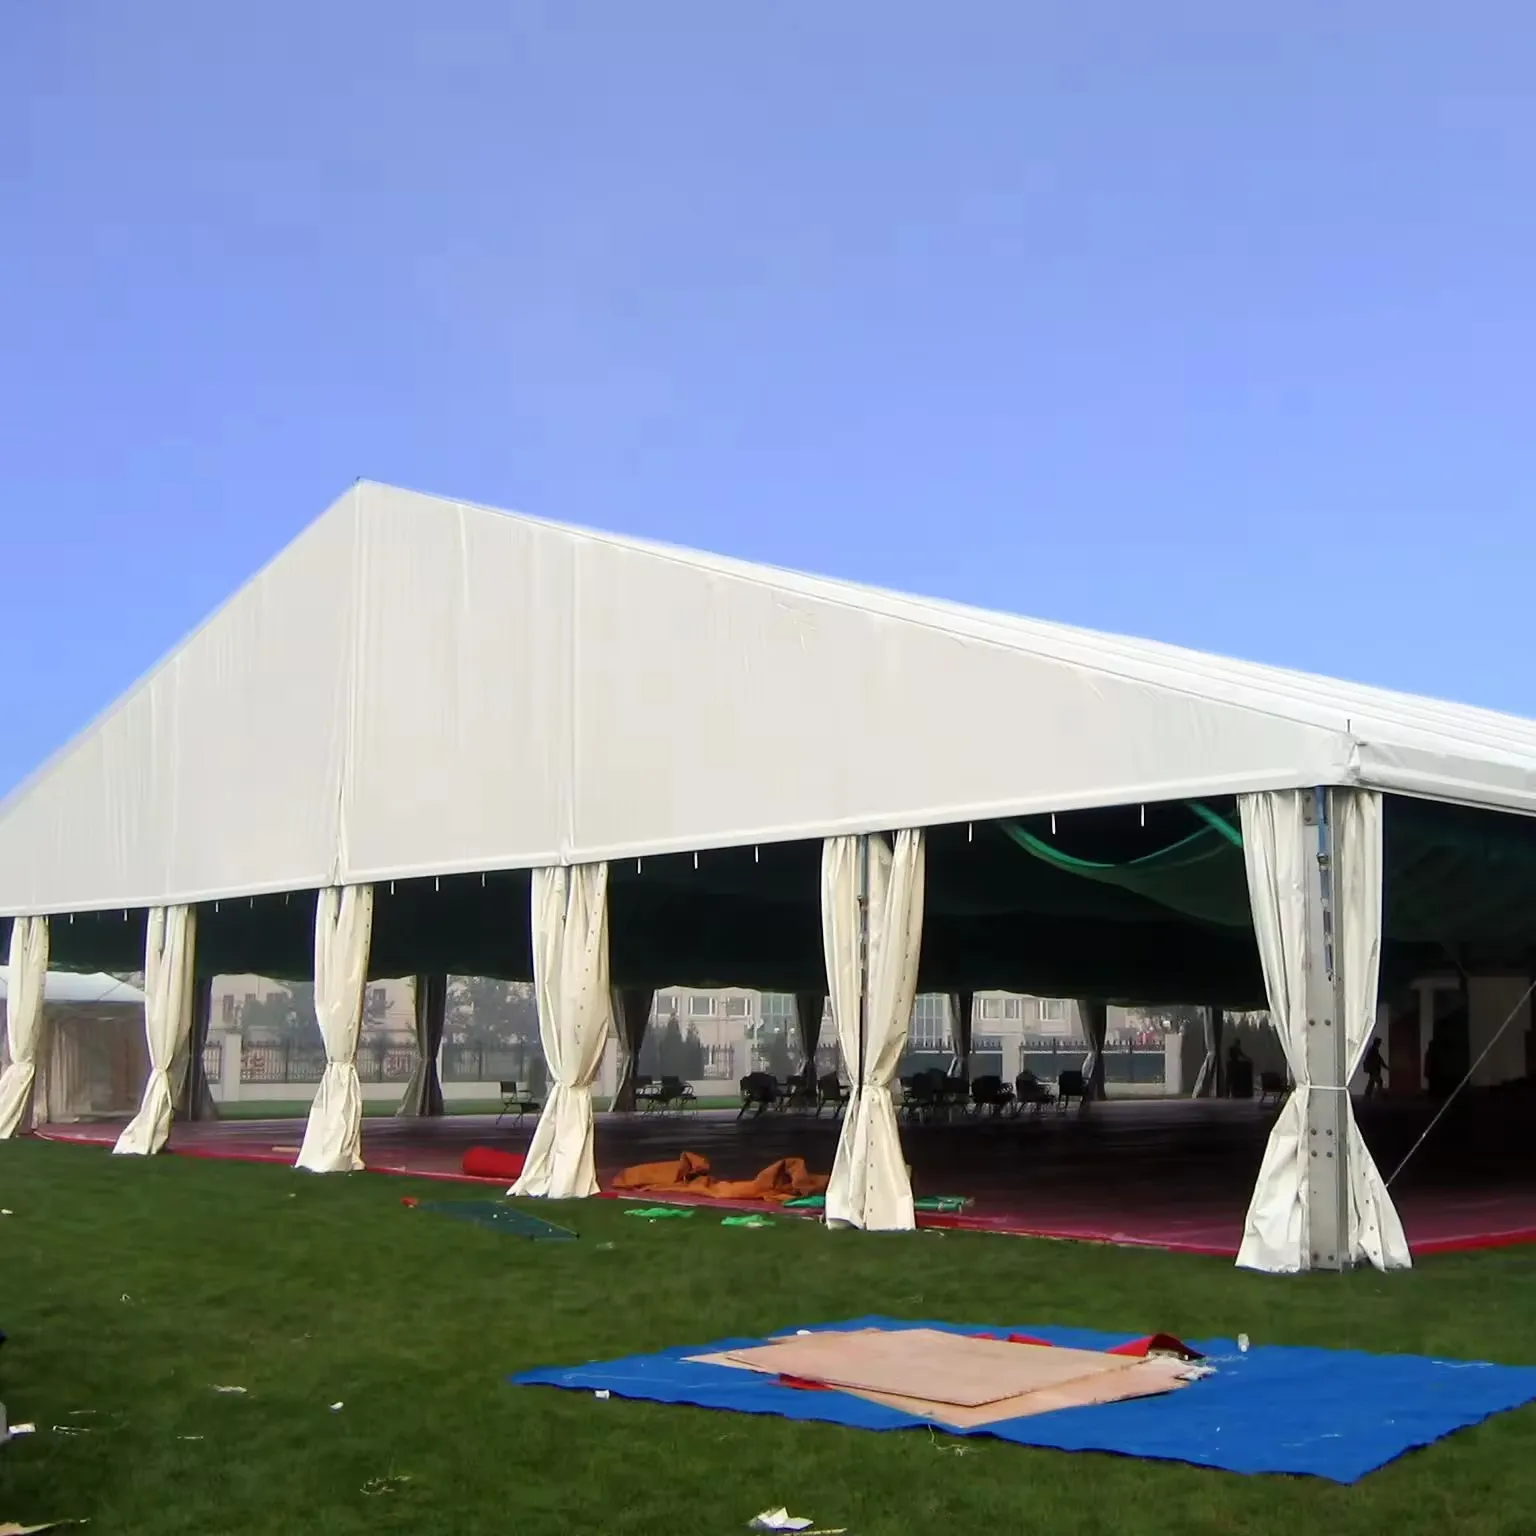 イベントのための大規模な結婚披露宴展示倉庫テント展示会アルミニウム構造テント